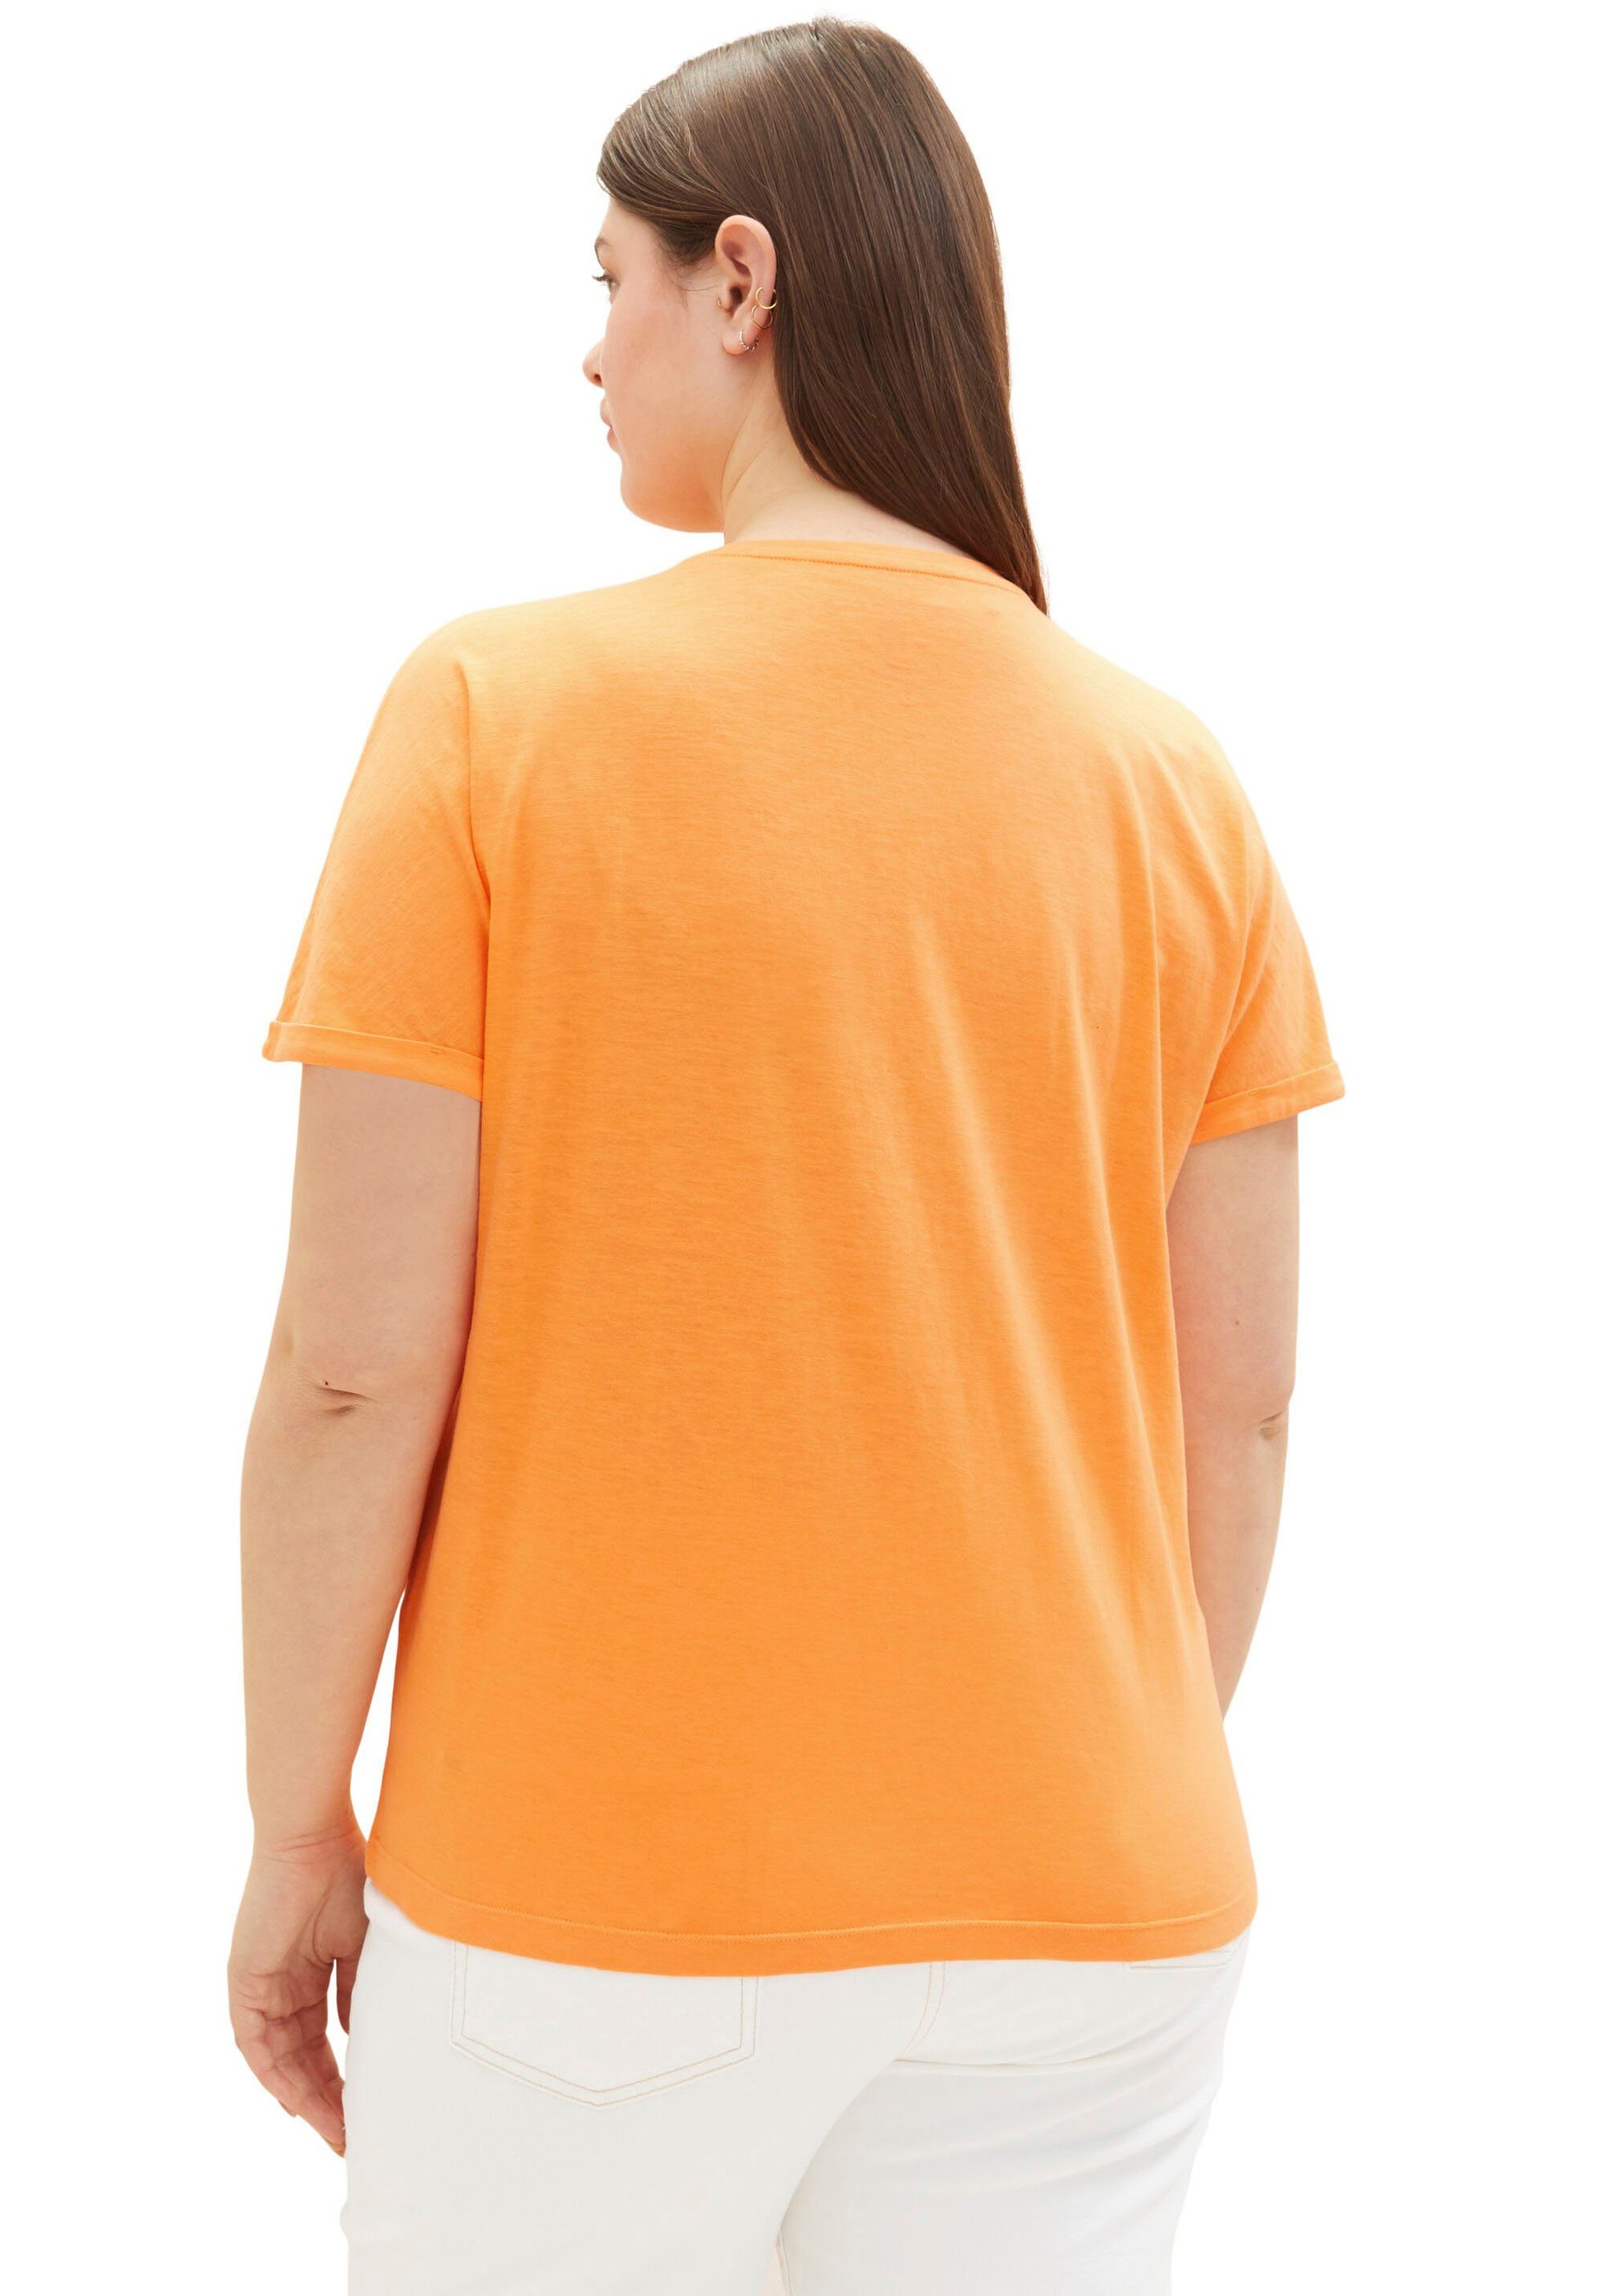 Ideal Freizeit Rundhalsausschnitt T-Shirt - PLUS NEUE für in TAILOR TOM Zuhause als oder mit Loungewear KOLLEKTION, der